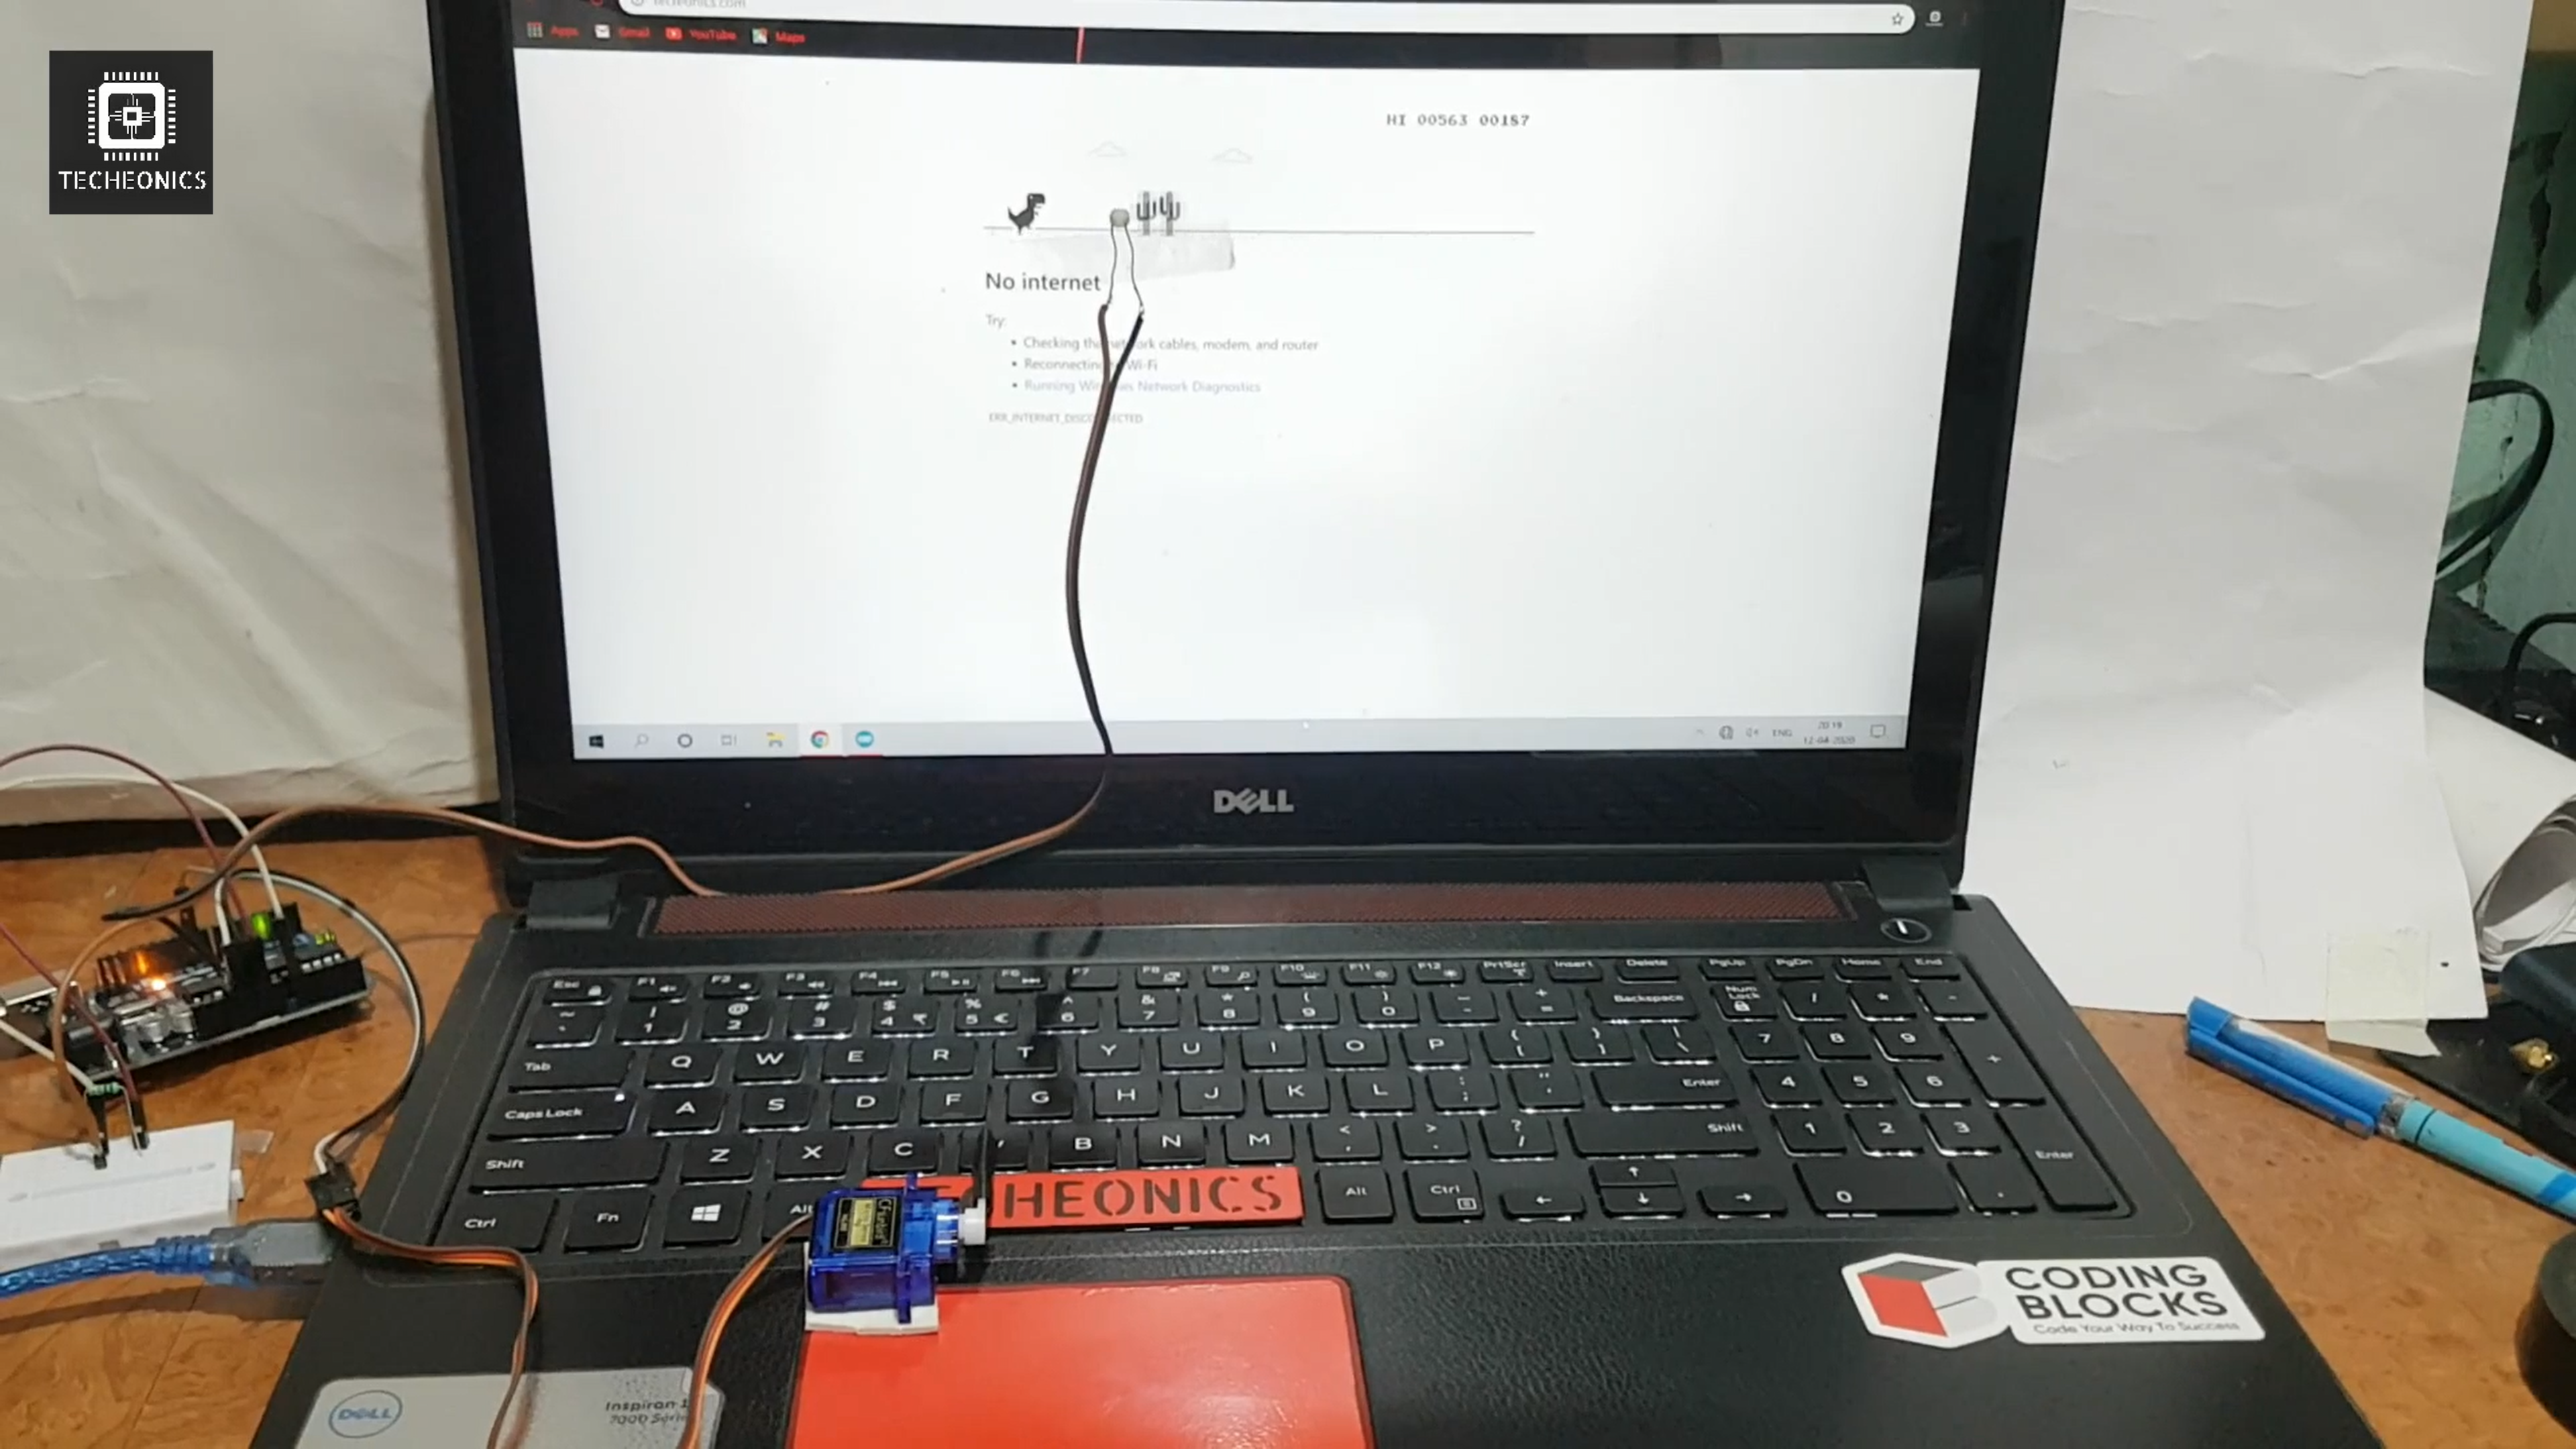 Automated Chrome Dino Game using Arduino 